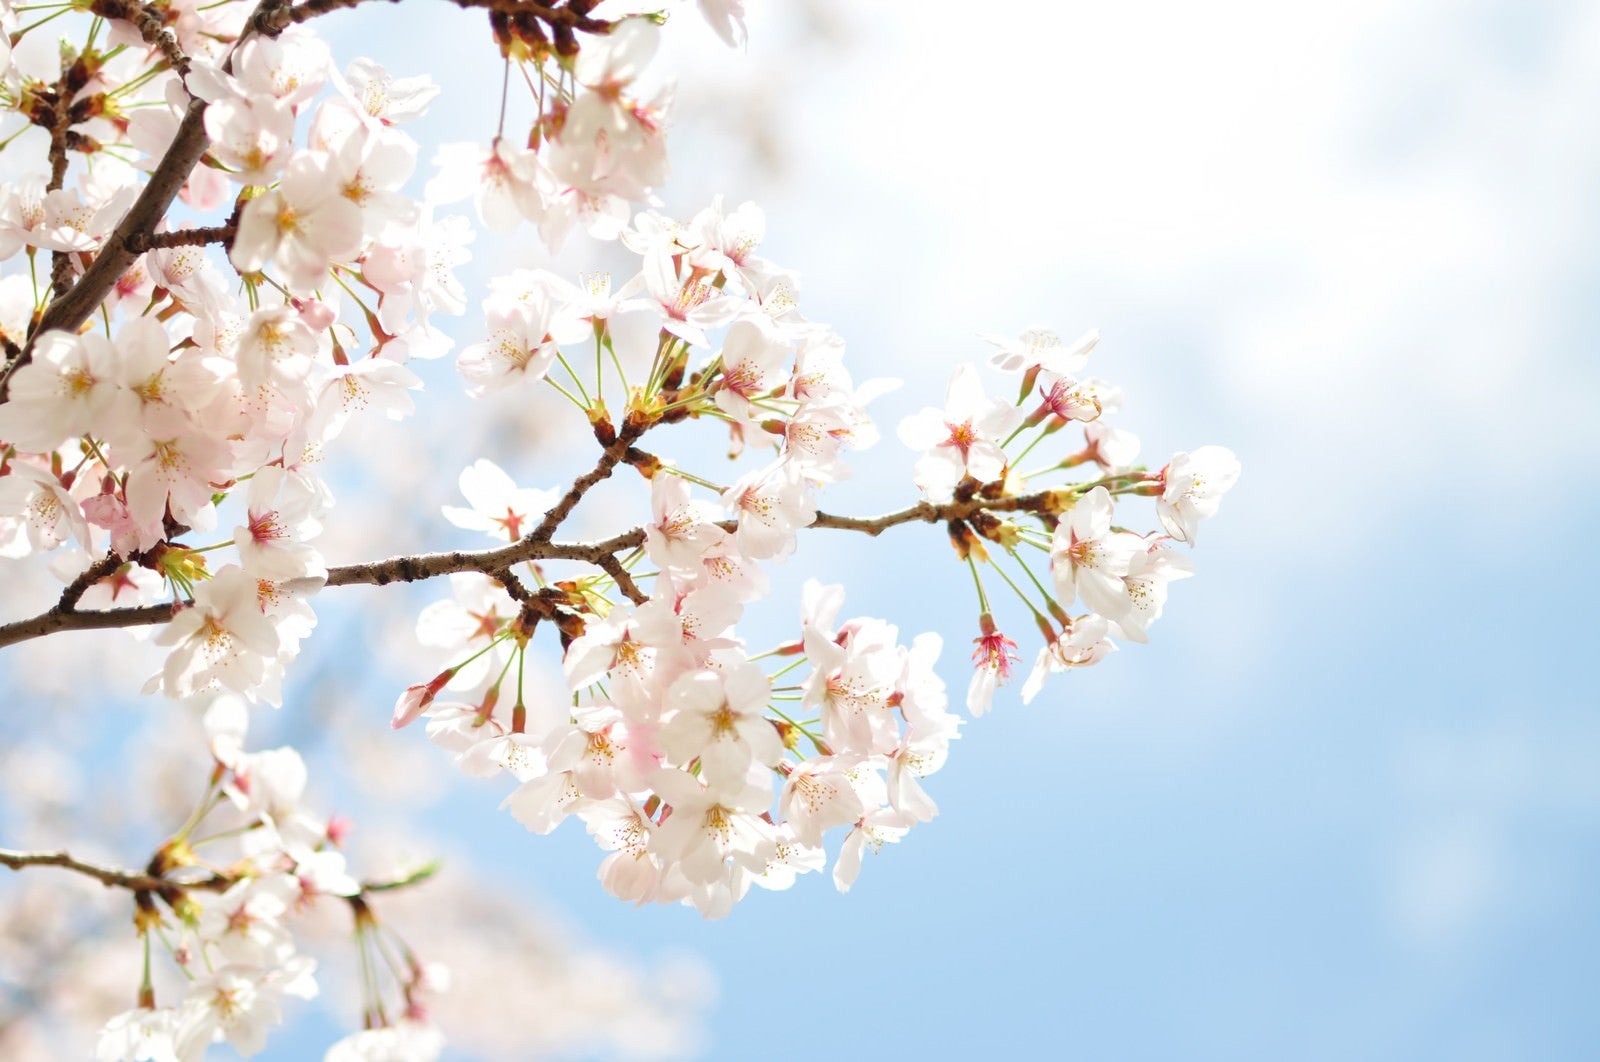 「淡い桜と青空」の写真